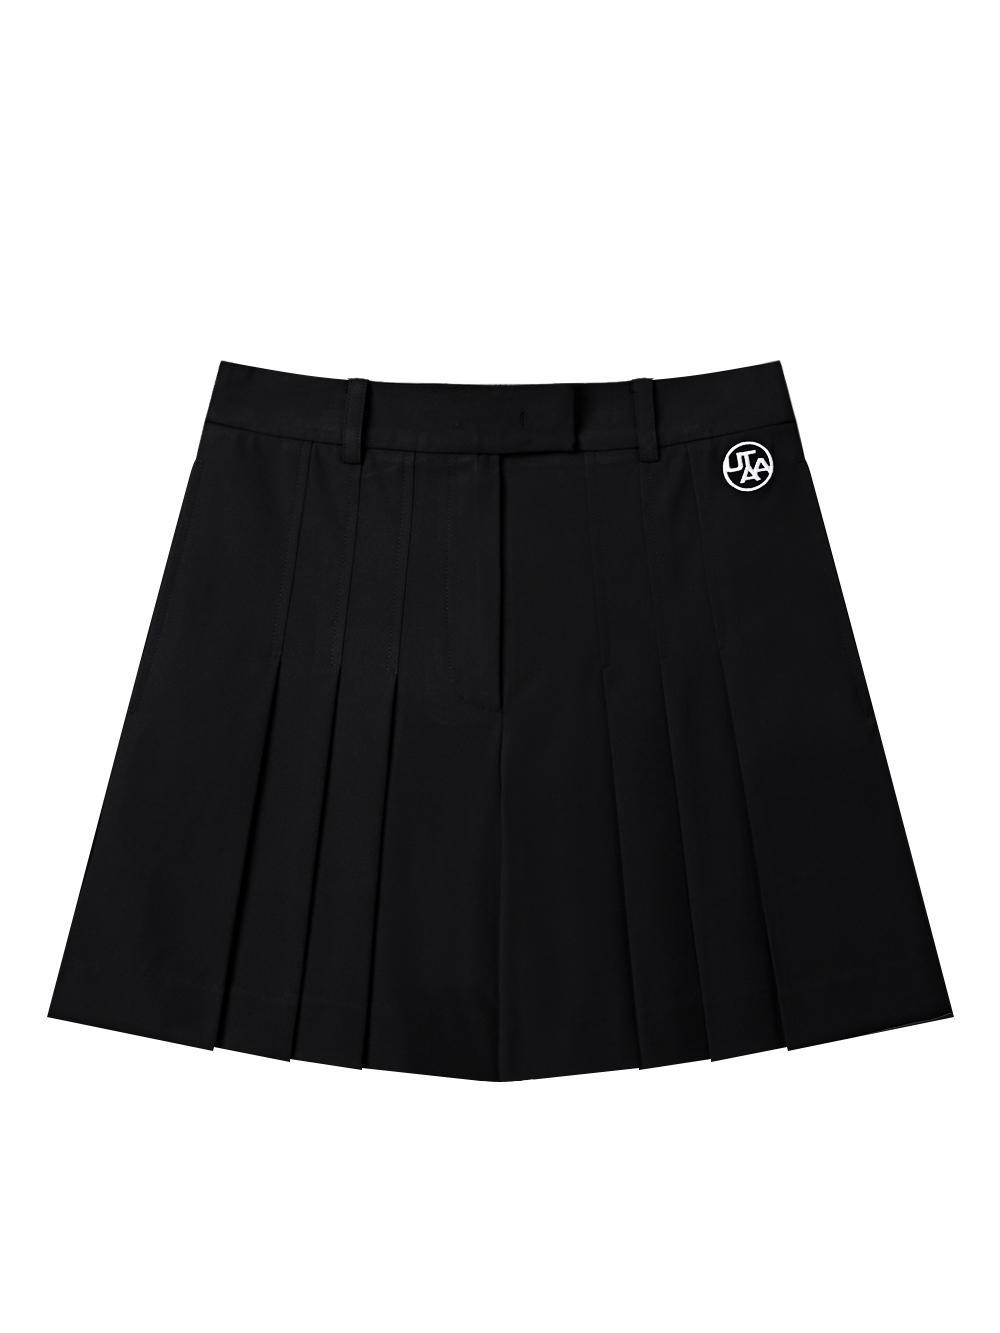 UTAA Ideal Half Pleats Skirt Pants : Black (UD2PSF173BK)